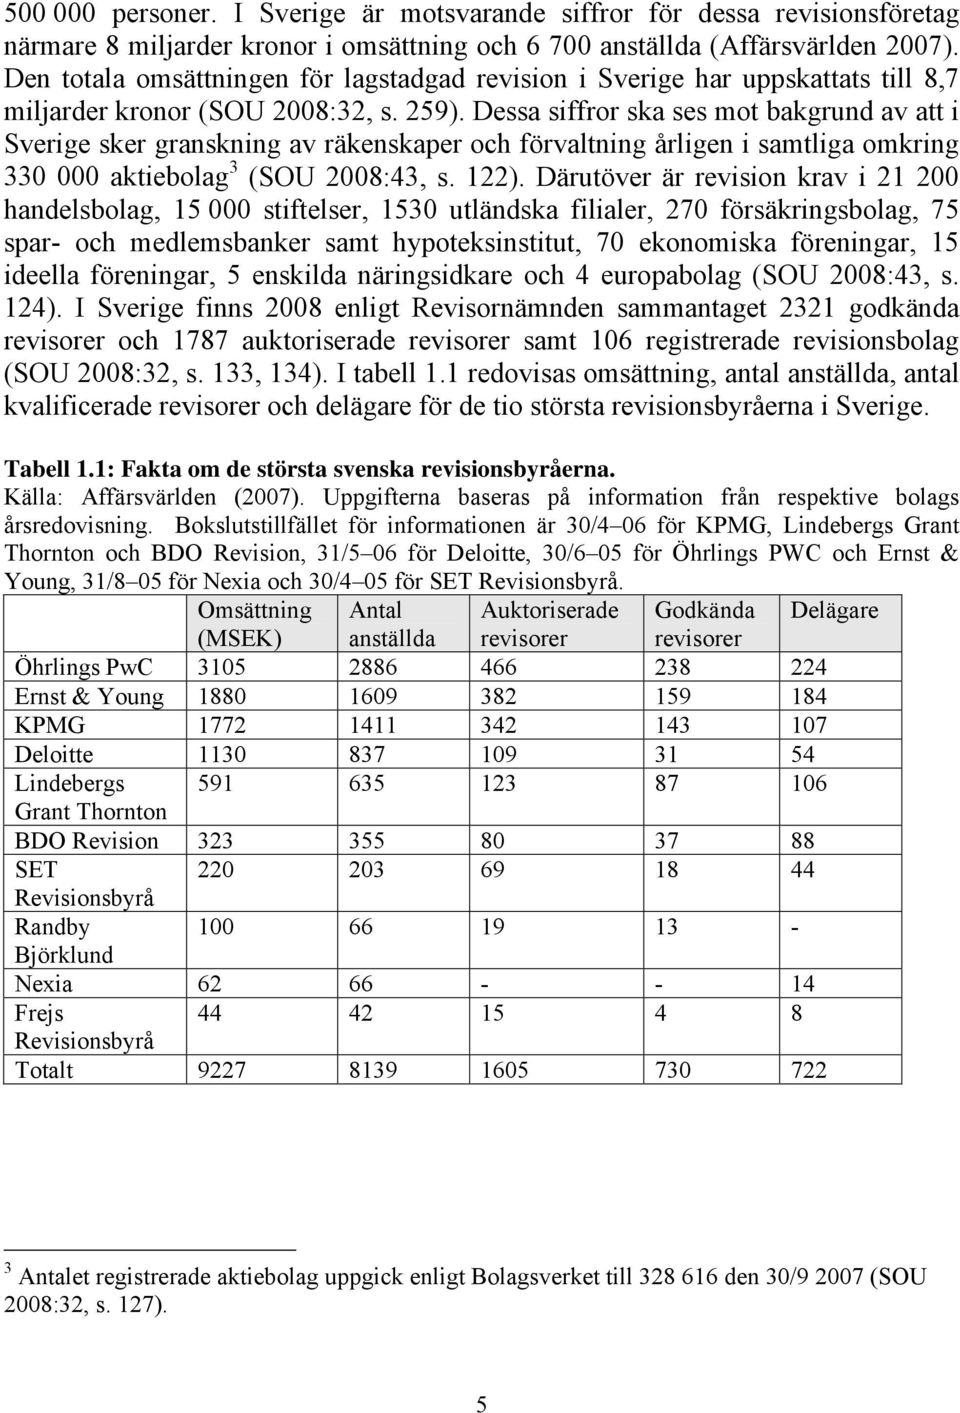 Dessa siffror ska ses mot bakgrund av att i Sverige sker granskning av räkenskaper och förvaltning årligen i samtliga omkring 330 000 aktiebolag 3 (SOU 2008:43, s. 122).